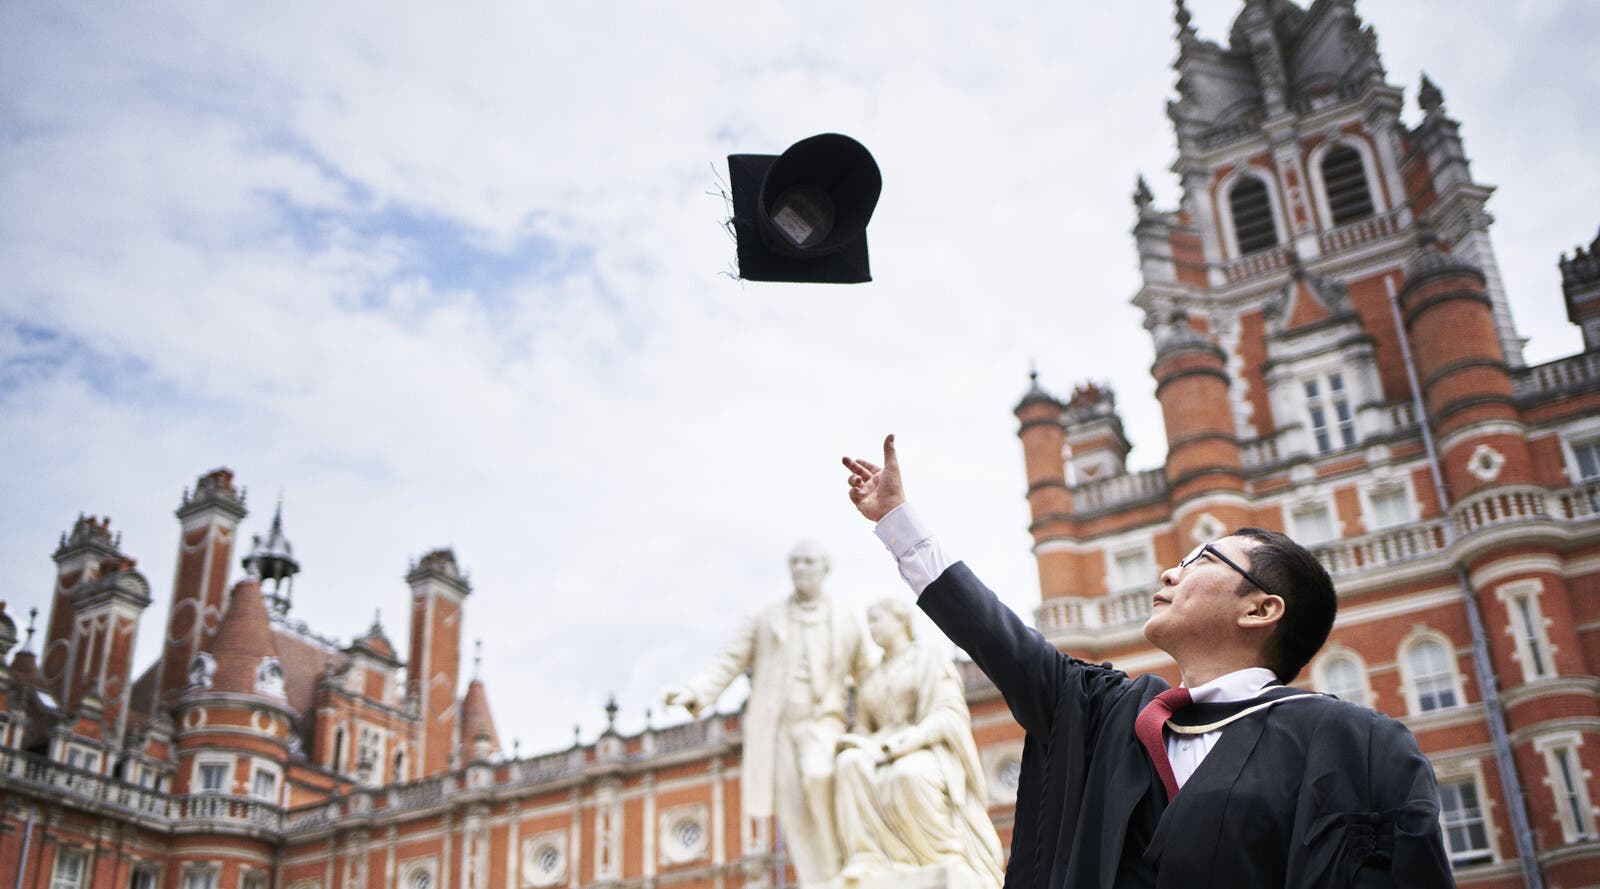 Graduate throwing their cap in the air